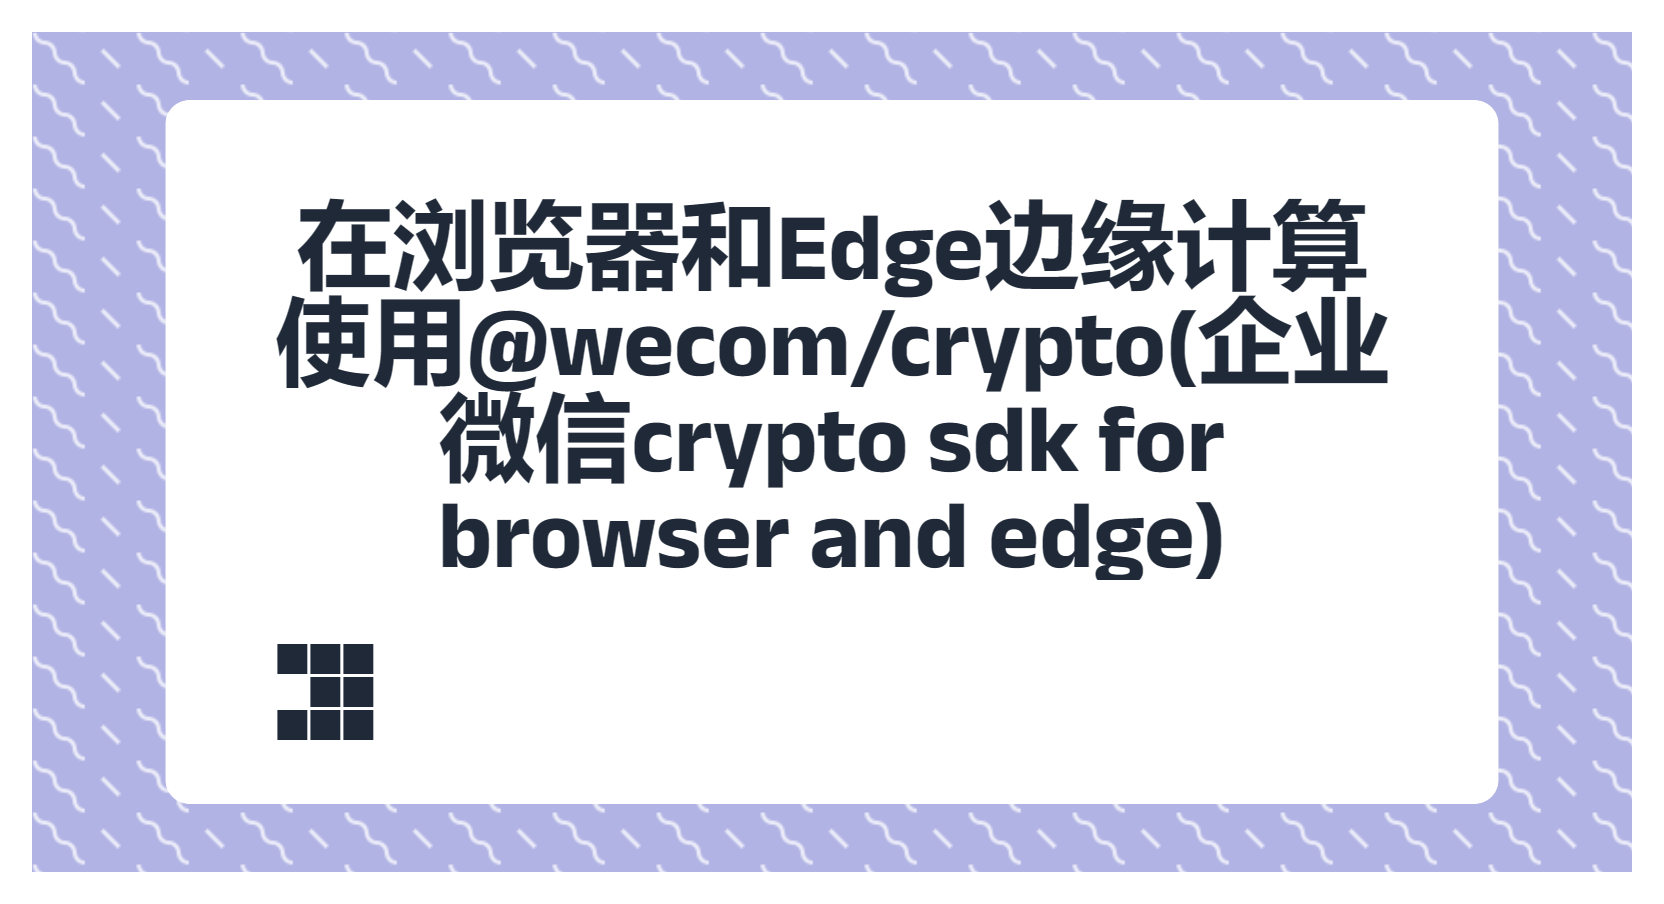 在浏览器和Edge边缘计算使用@wecom/crypto(企业微信crypto sdk for browser and edge)